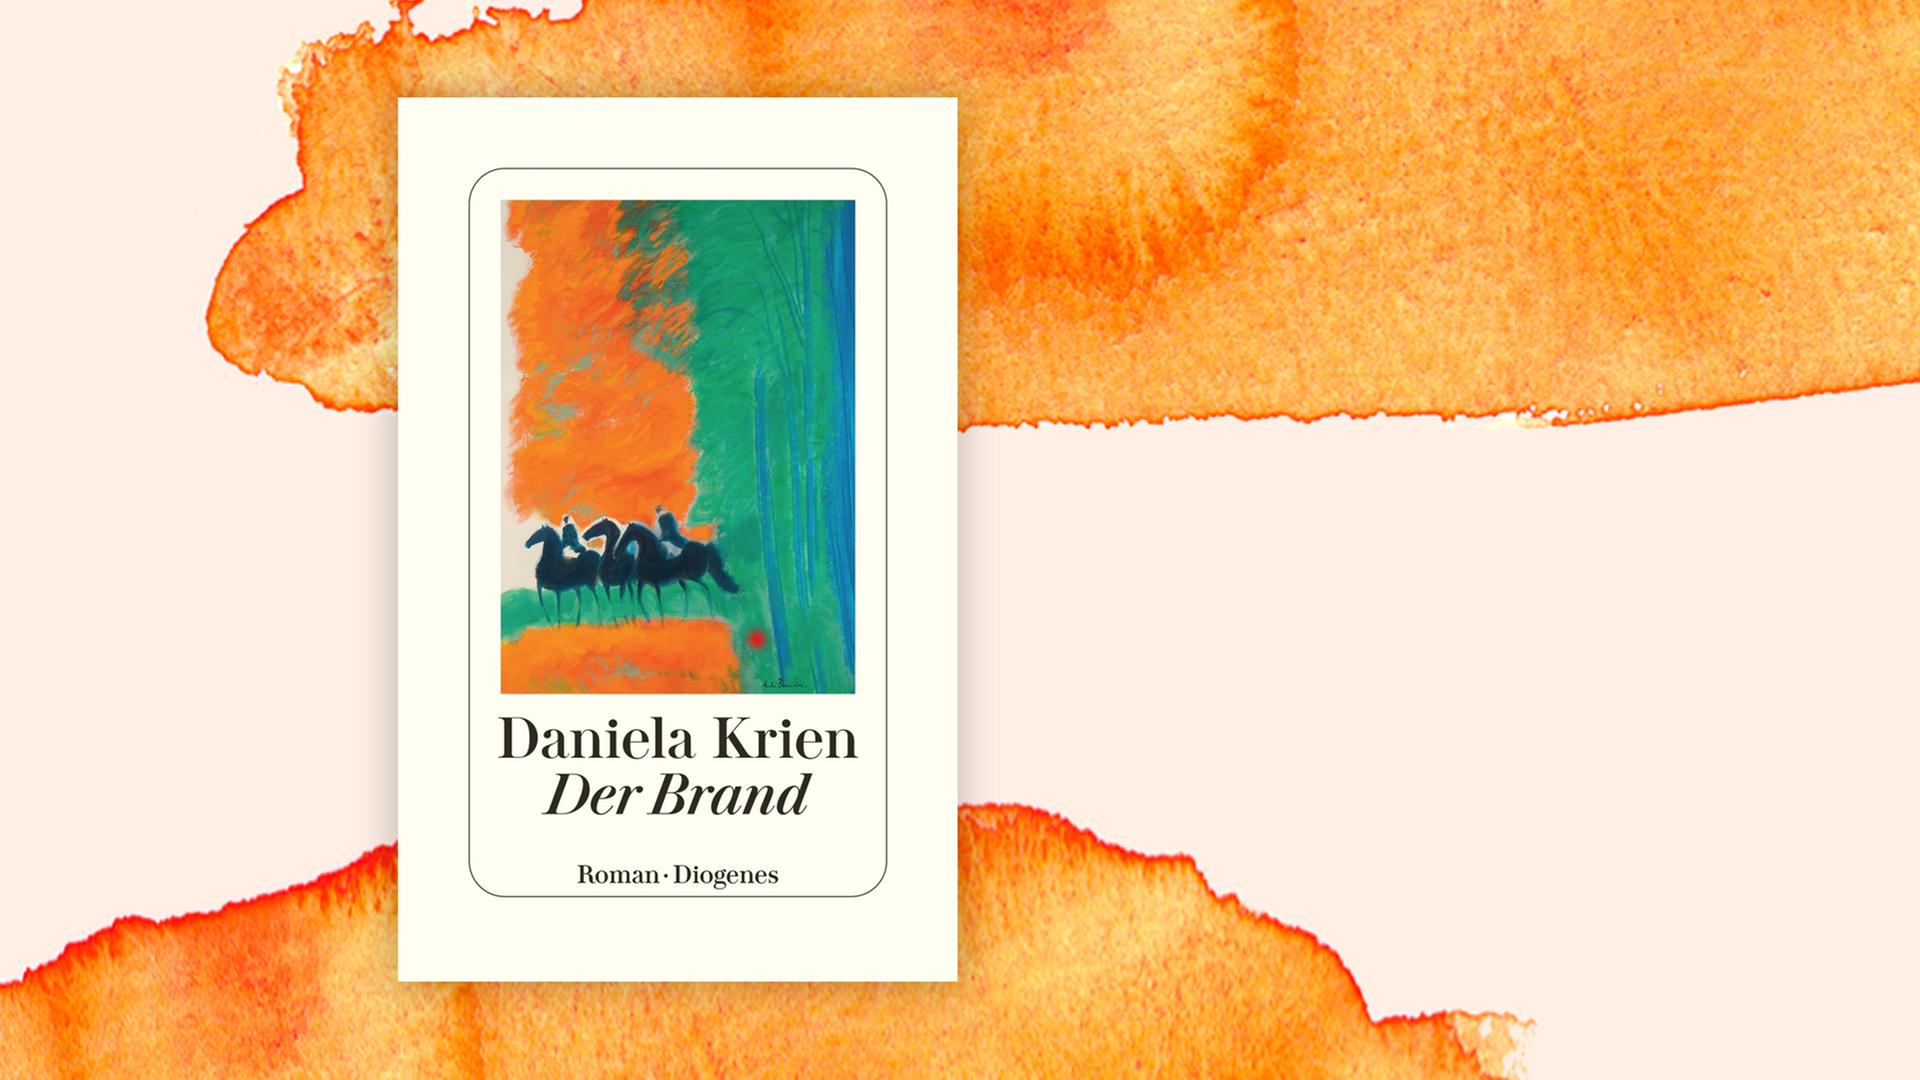 Buchcover: "Der Brand" von Daniela Krien